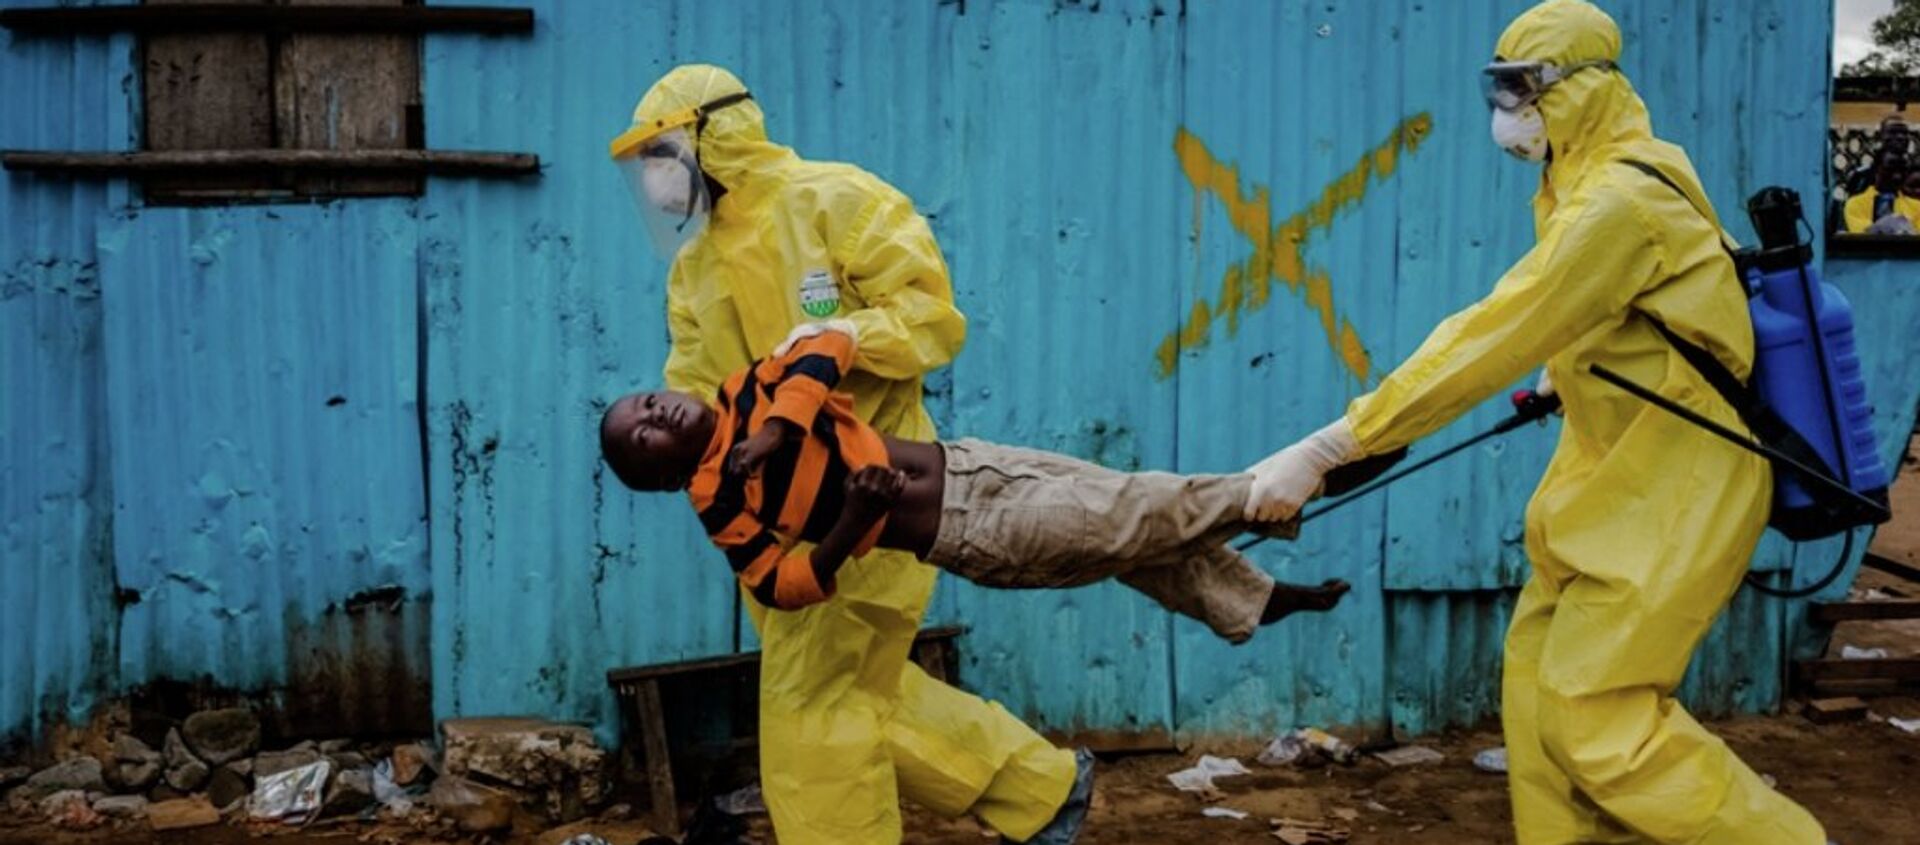 Daniel Berehulak, Ebola salgınında Liberya’da çektiği fotoğrafla Pulitzer kazandı. - Sputnik Türkiye, 1920, 29.12.2015